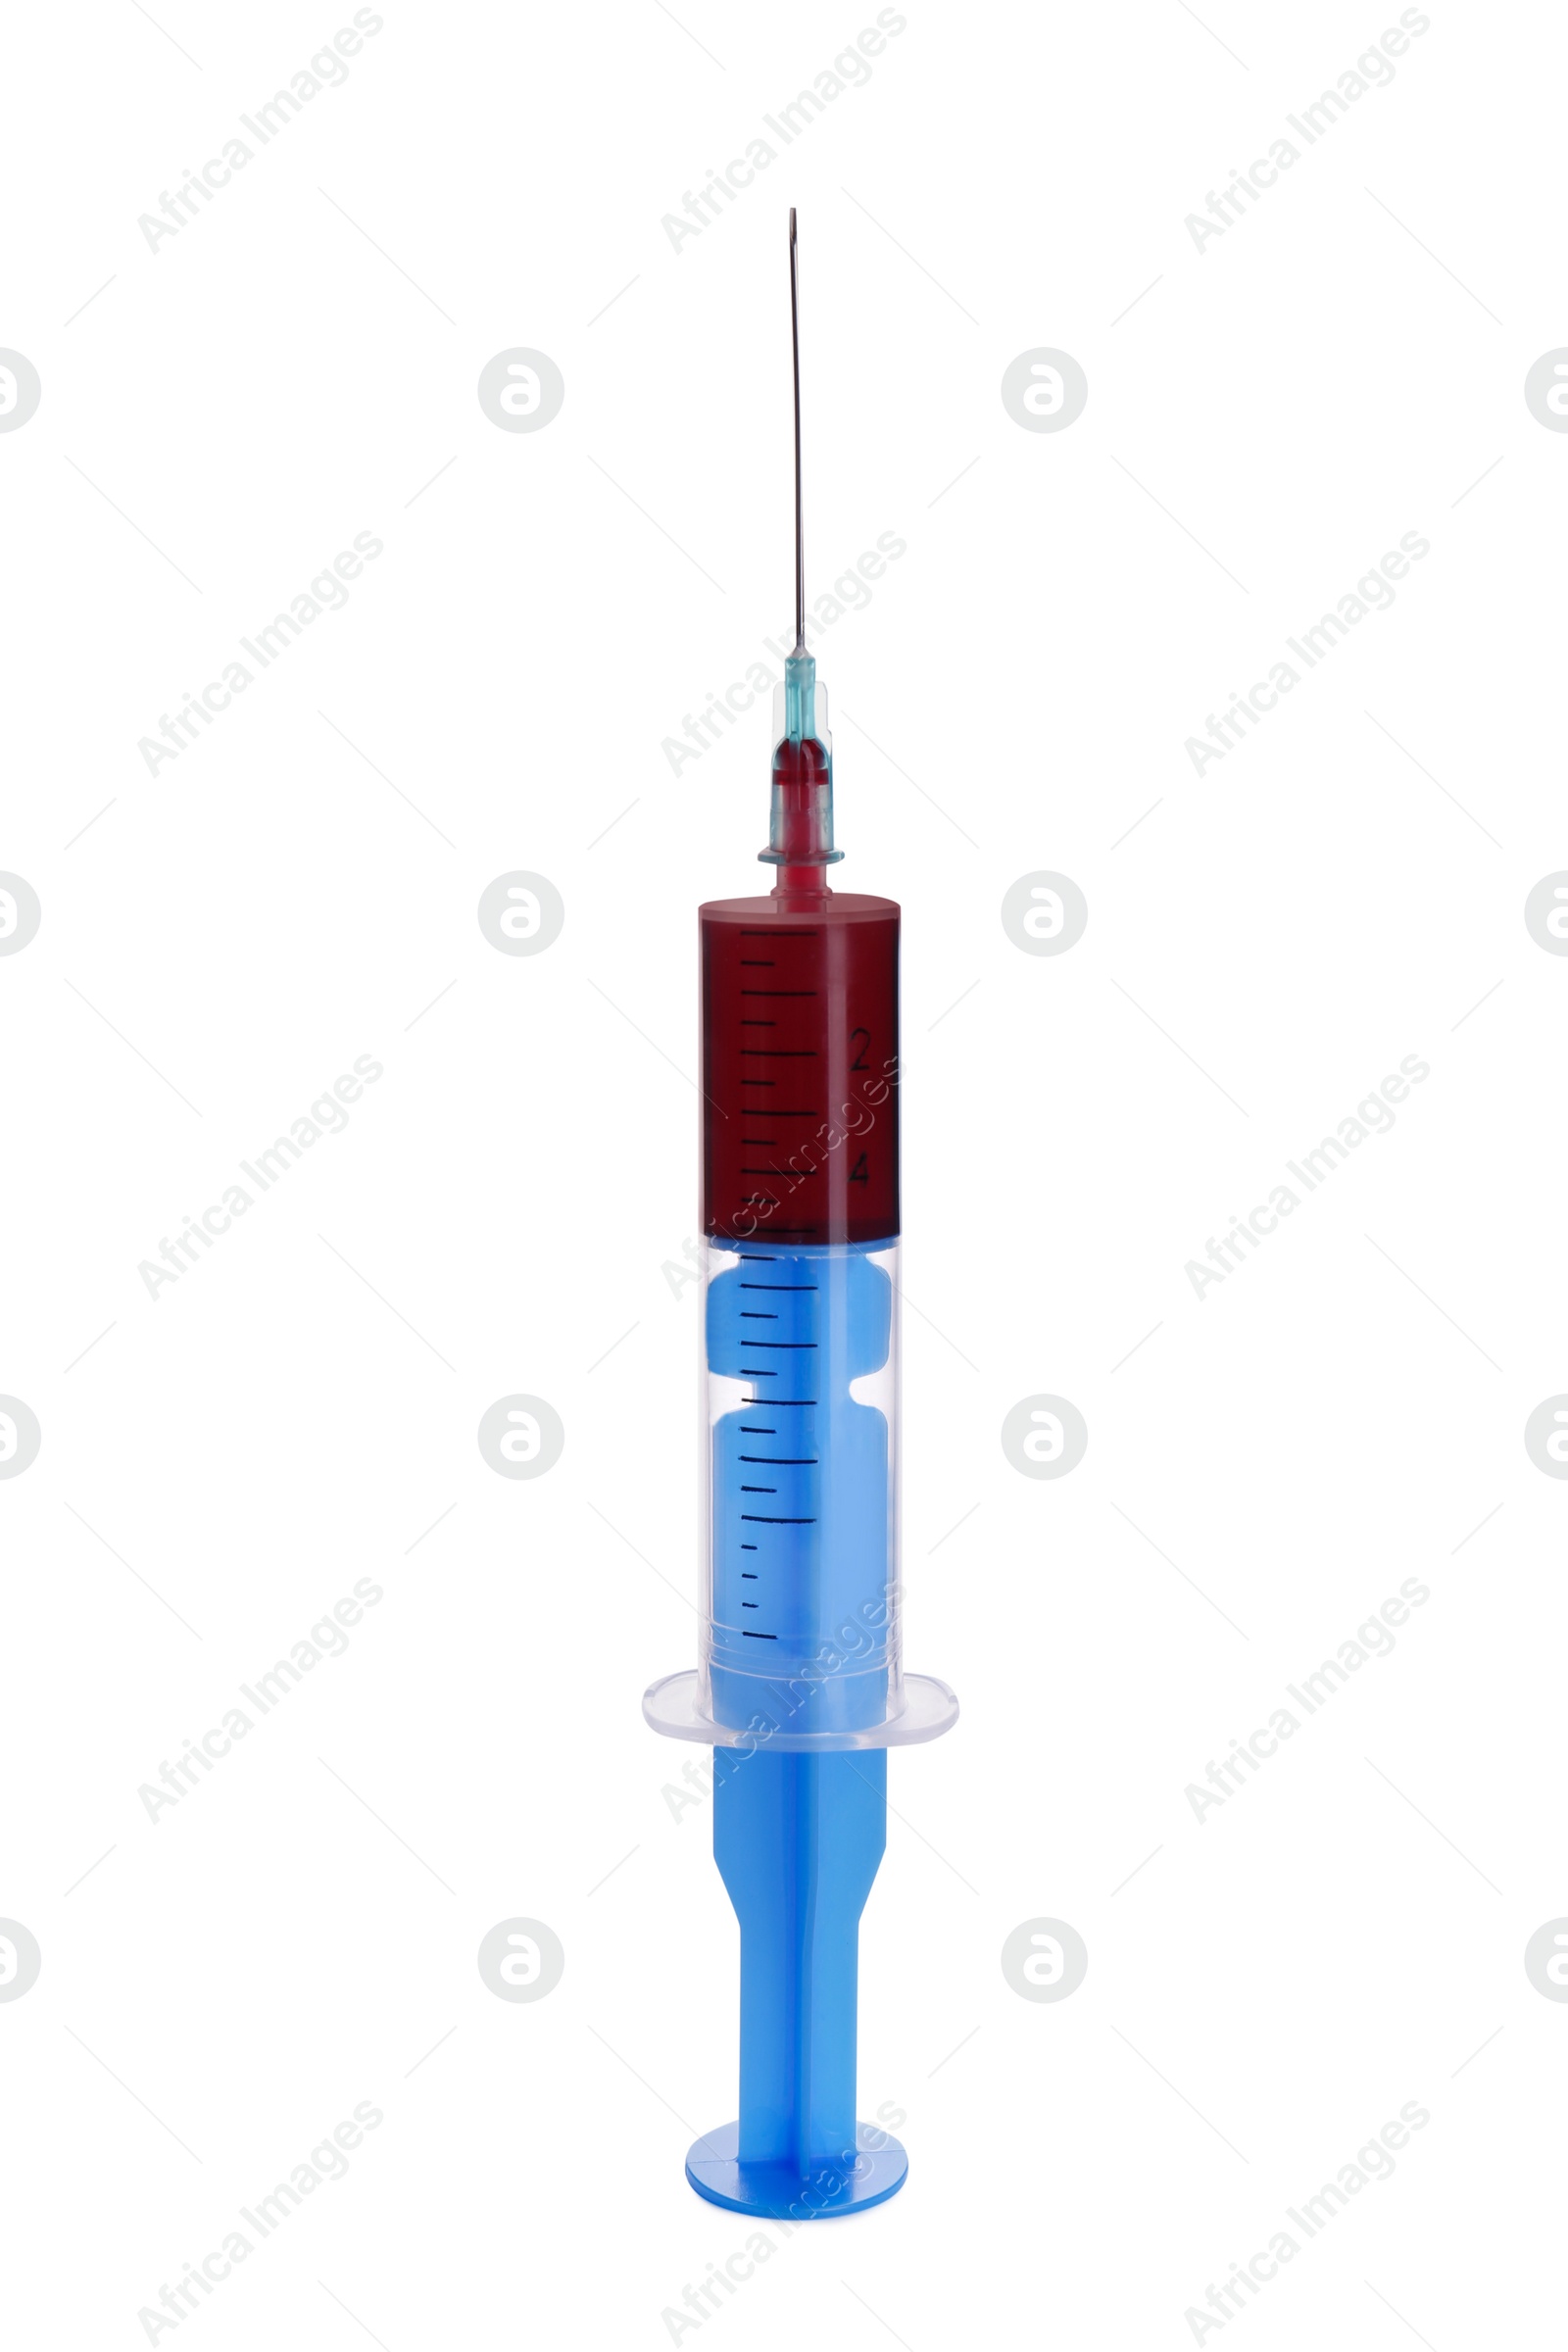 Photo of Plastic syringe with blood isolated on white